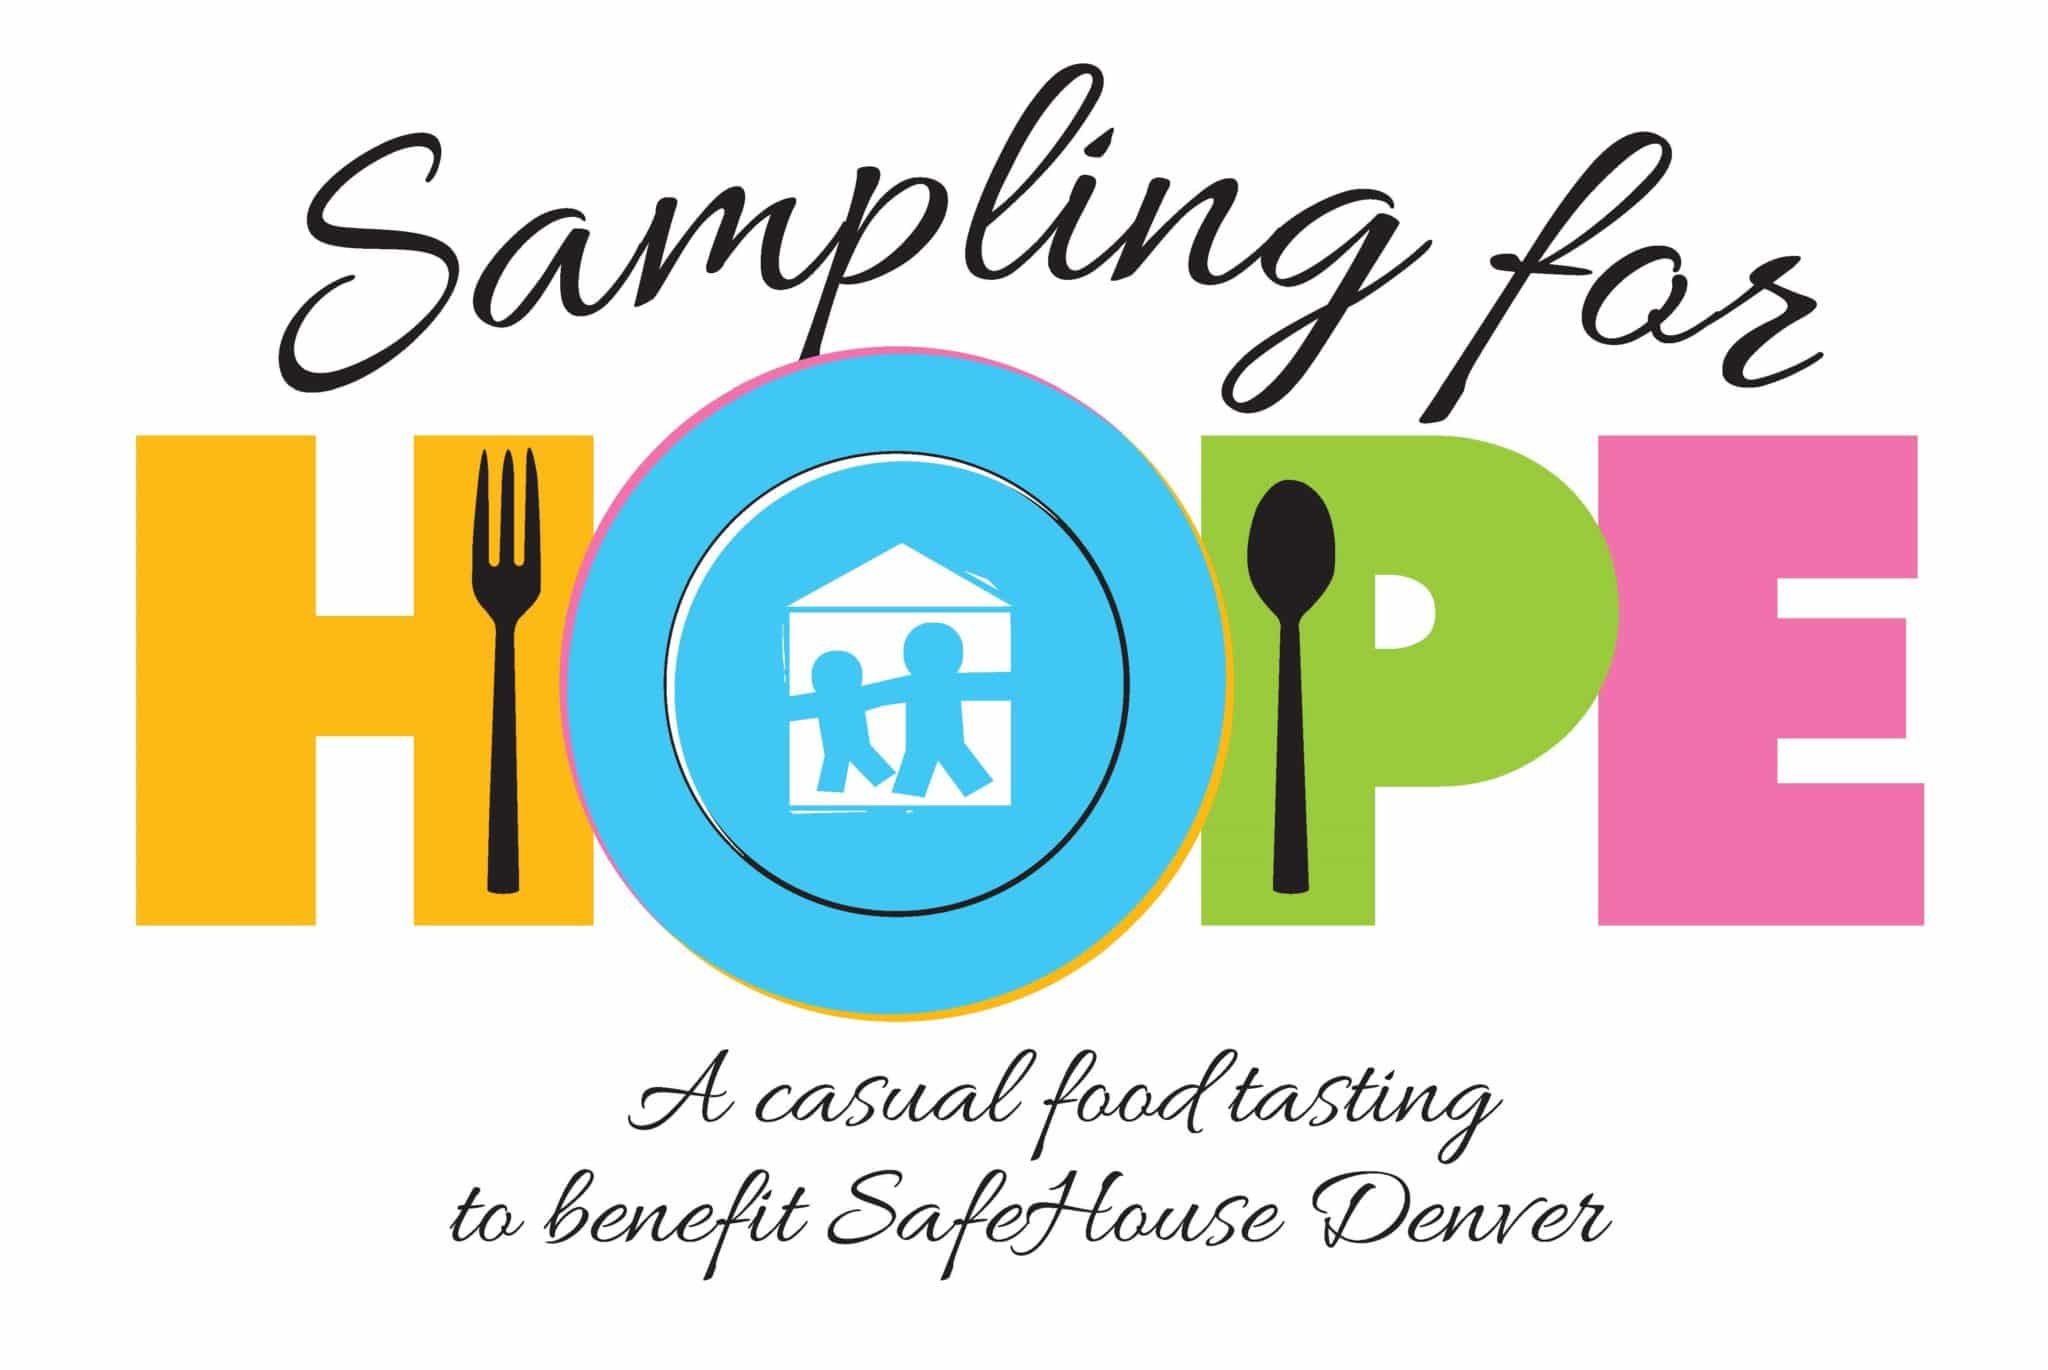 Sampling-for-Hope-Event-logo